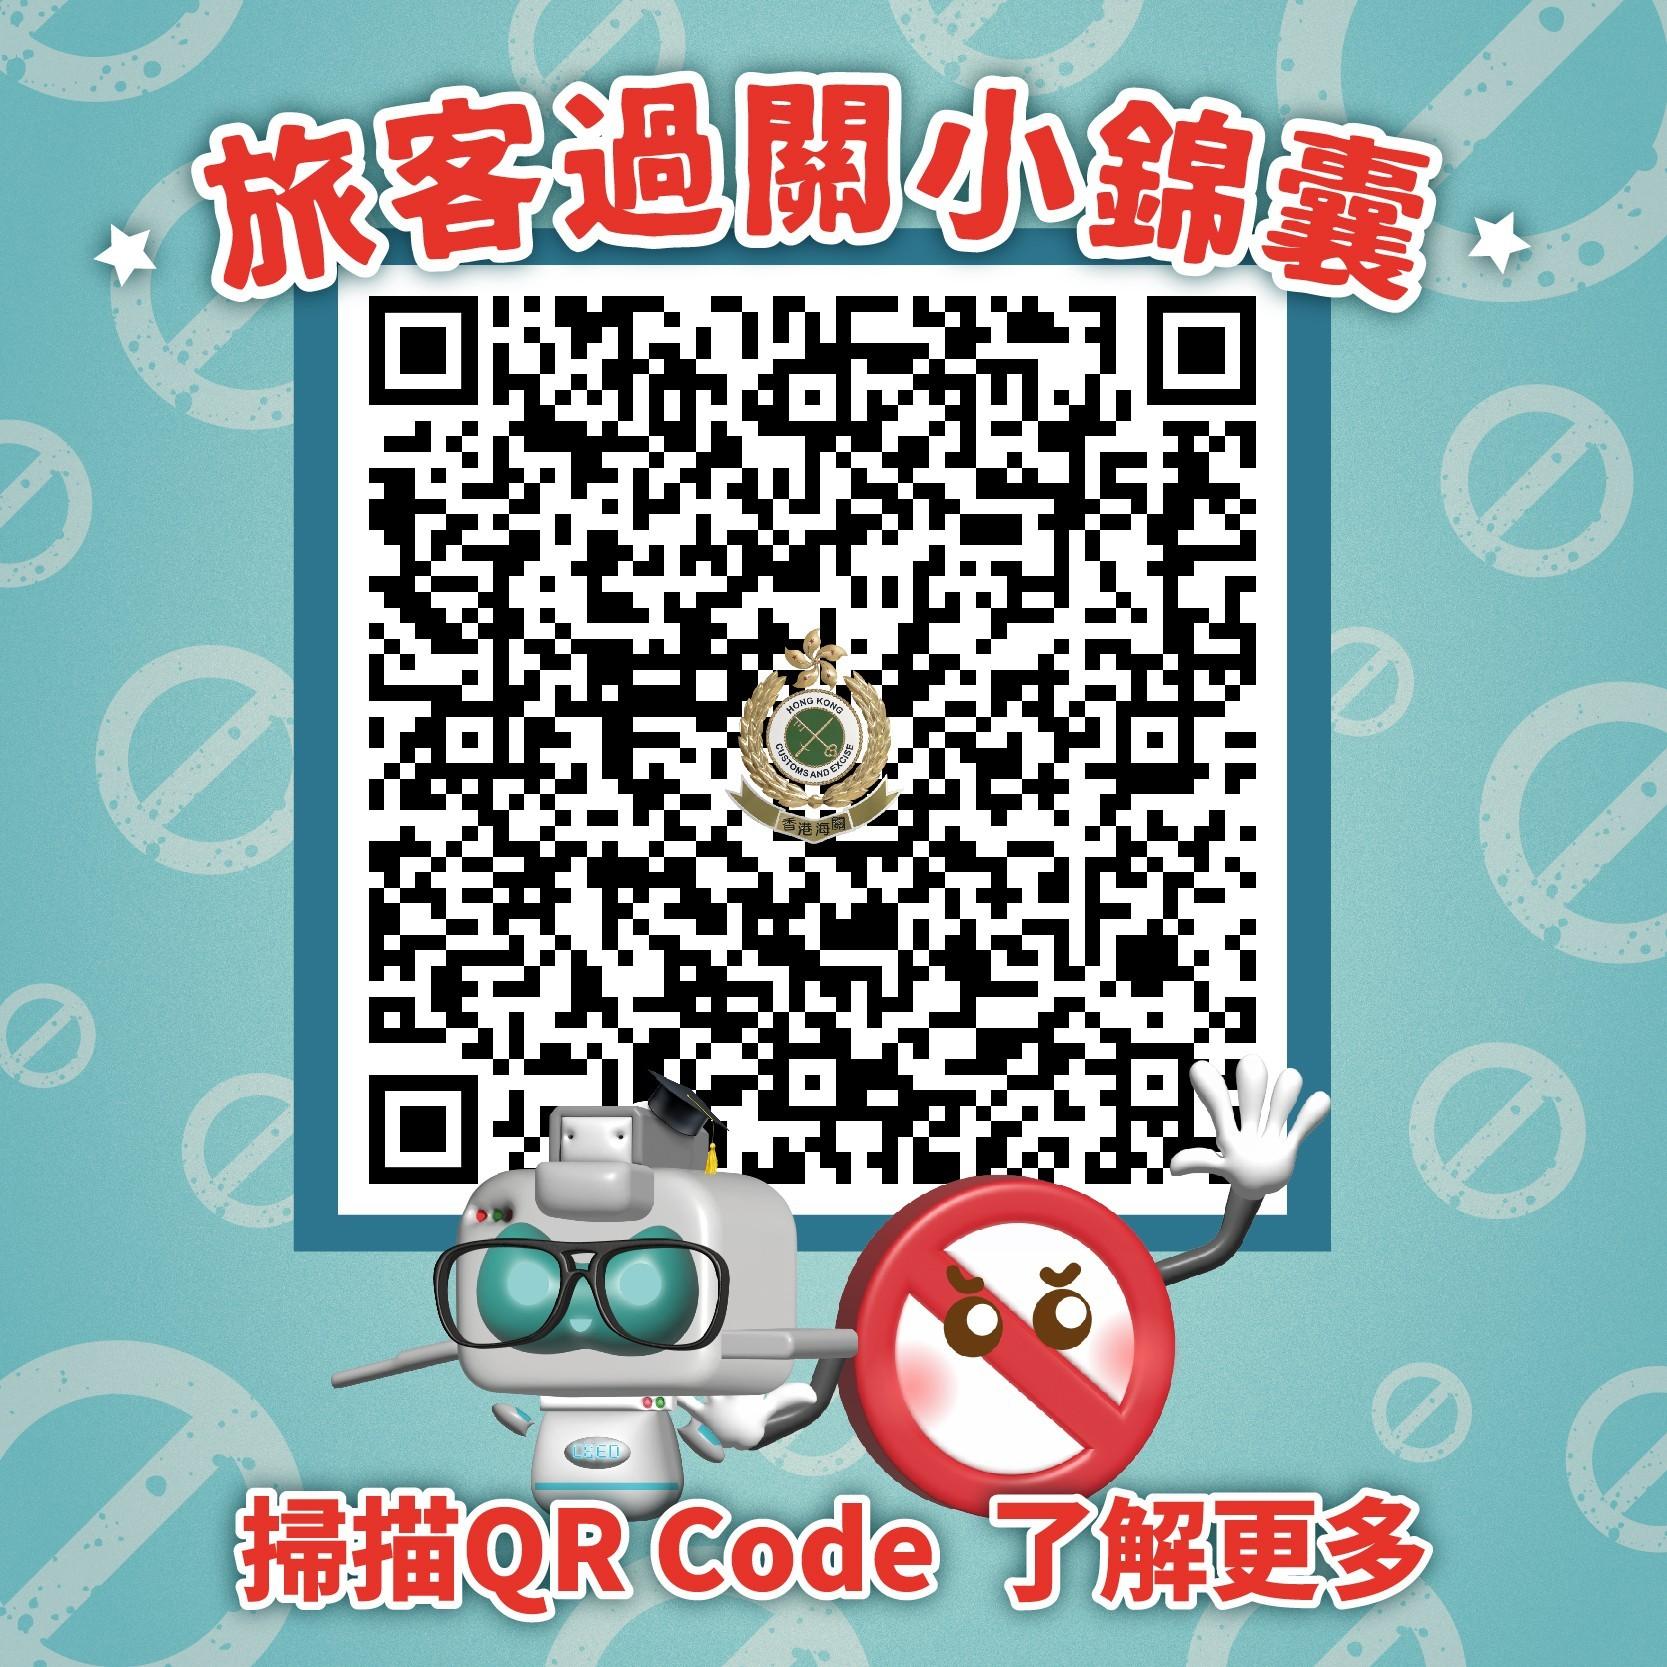 香港海關在社交平台專頁和微信公眾號發放「旅客過關小錦囊」，提醒市民及旅客須留意切勿攜帶違禁品及受管制物品進出香港。圖示連結到小錦囊的二維碼。